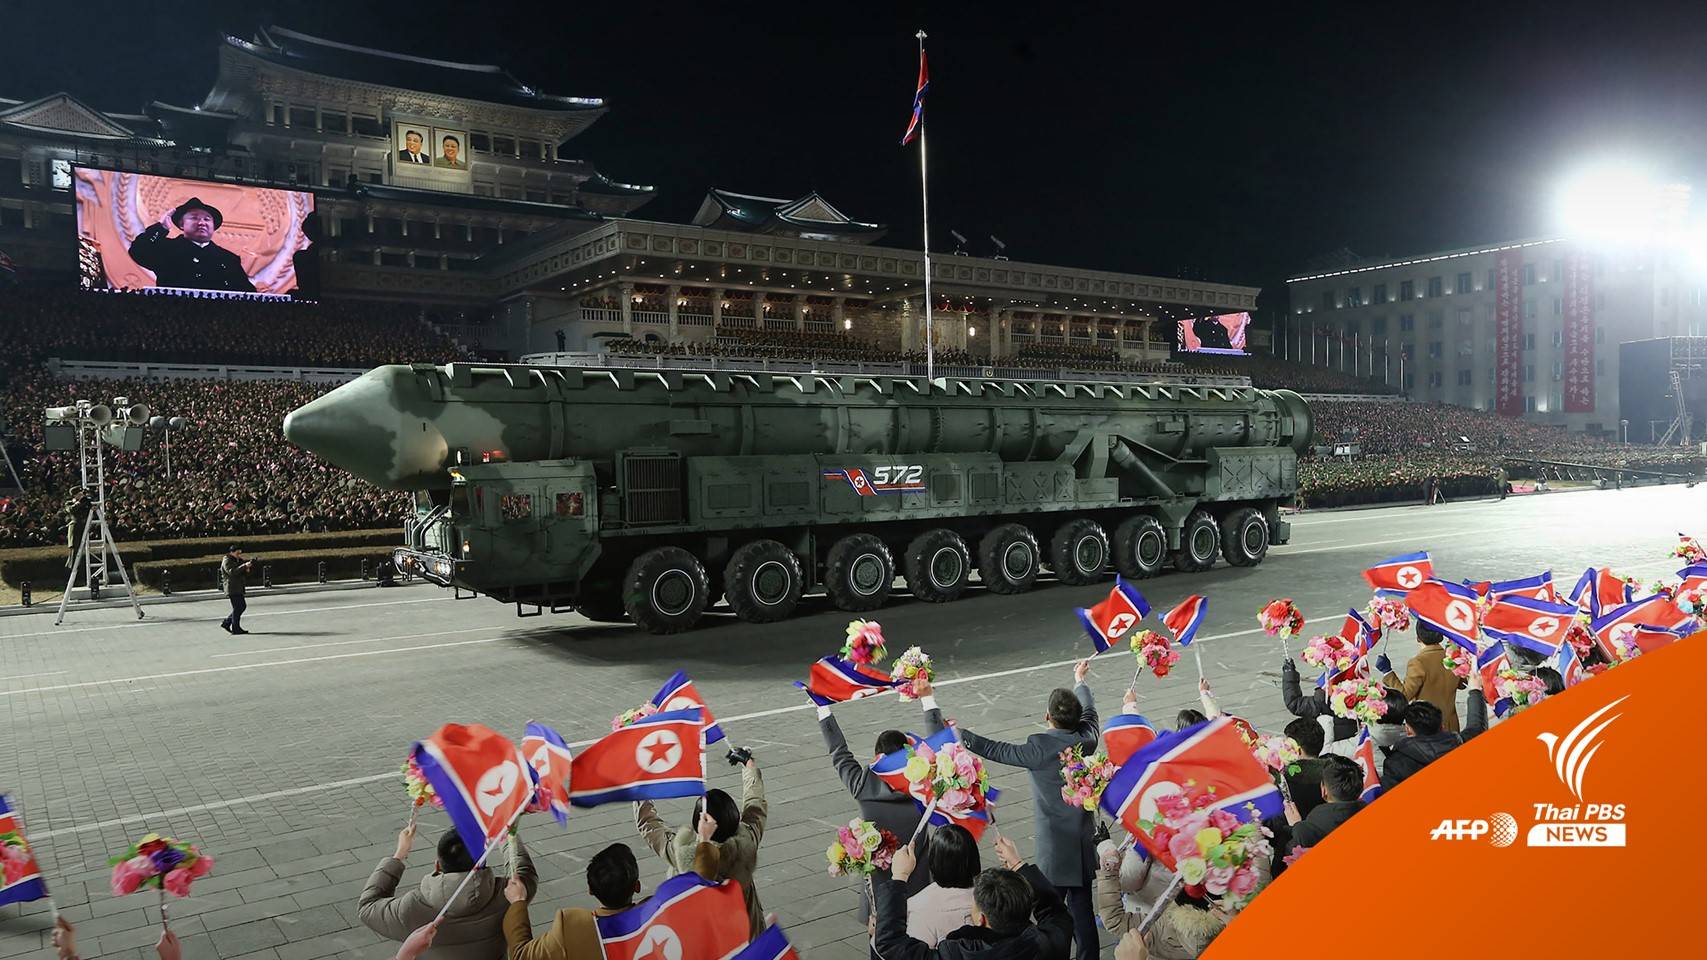 ครบรอบ 75 ปีกองทัพ เกาหลีเหนือจัดแสดงขีปนาวุธข้ามทวีปครั้งใหญ่ที่สุด